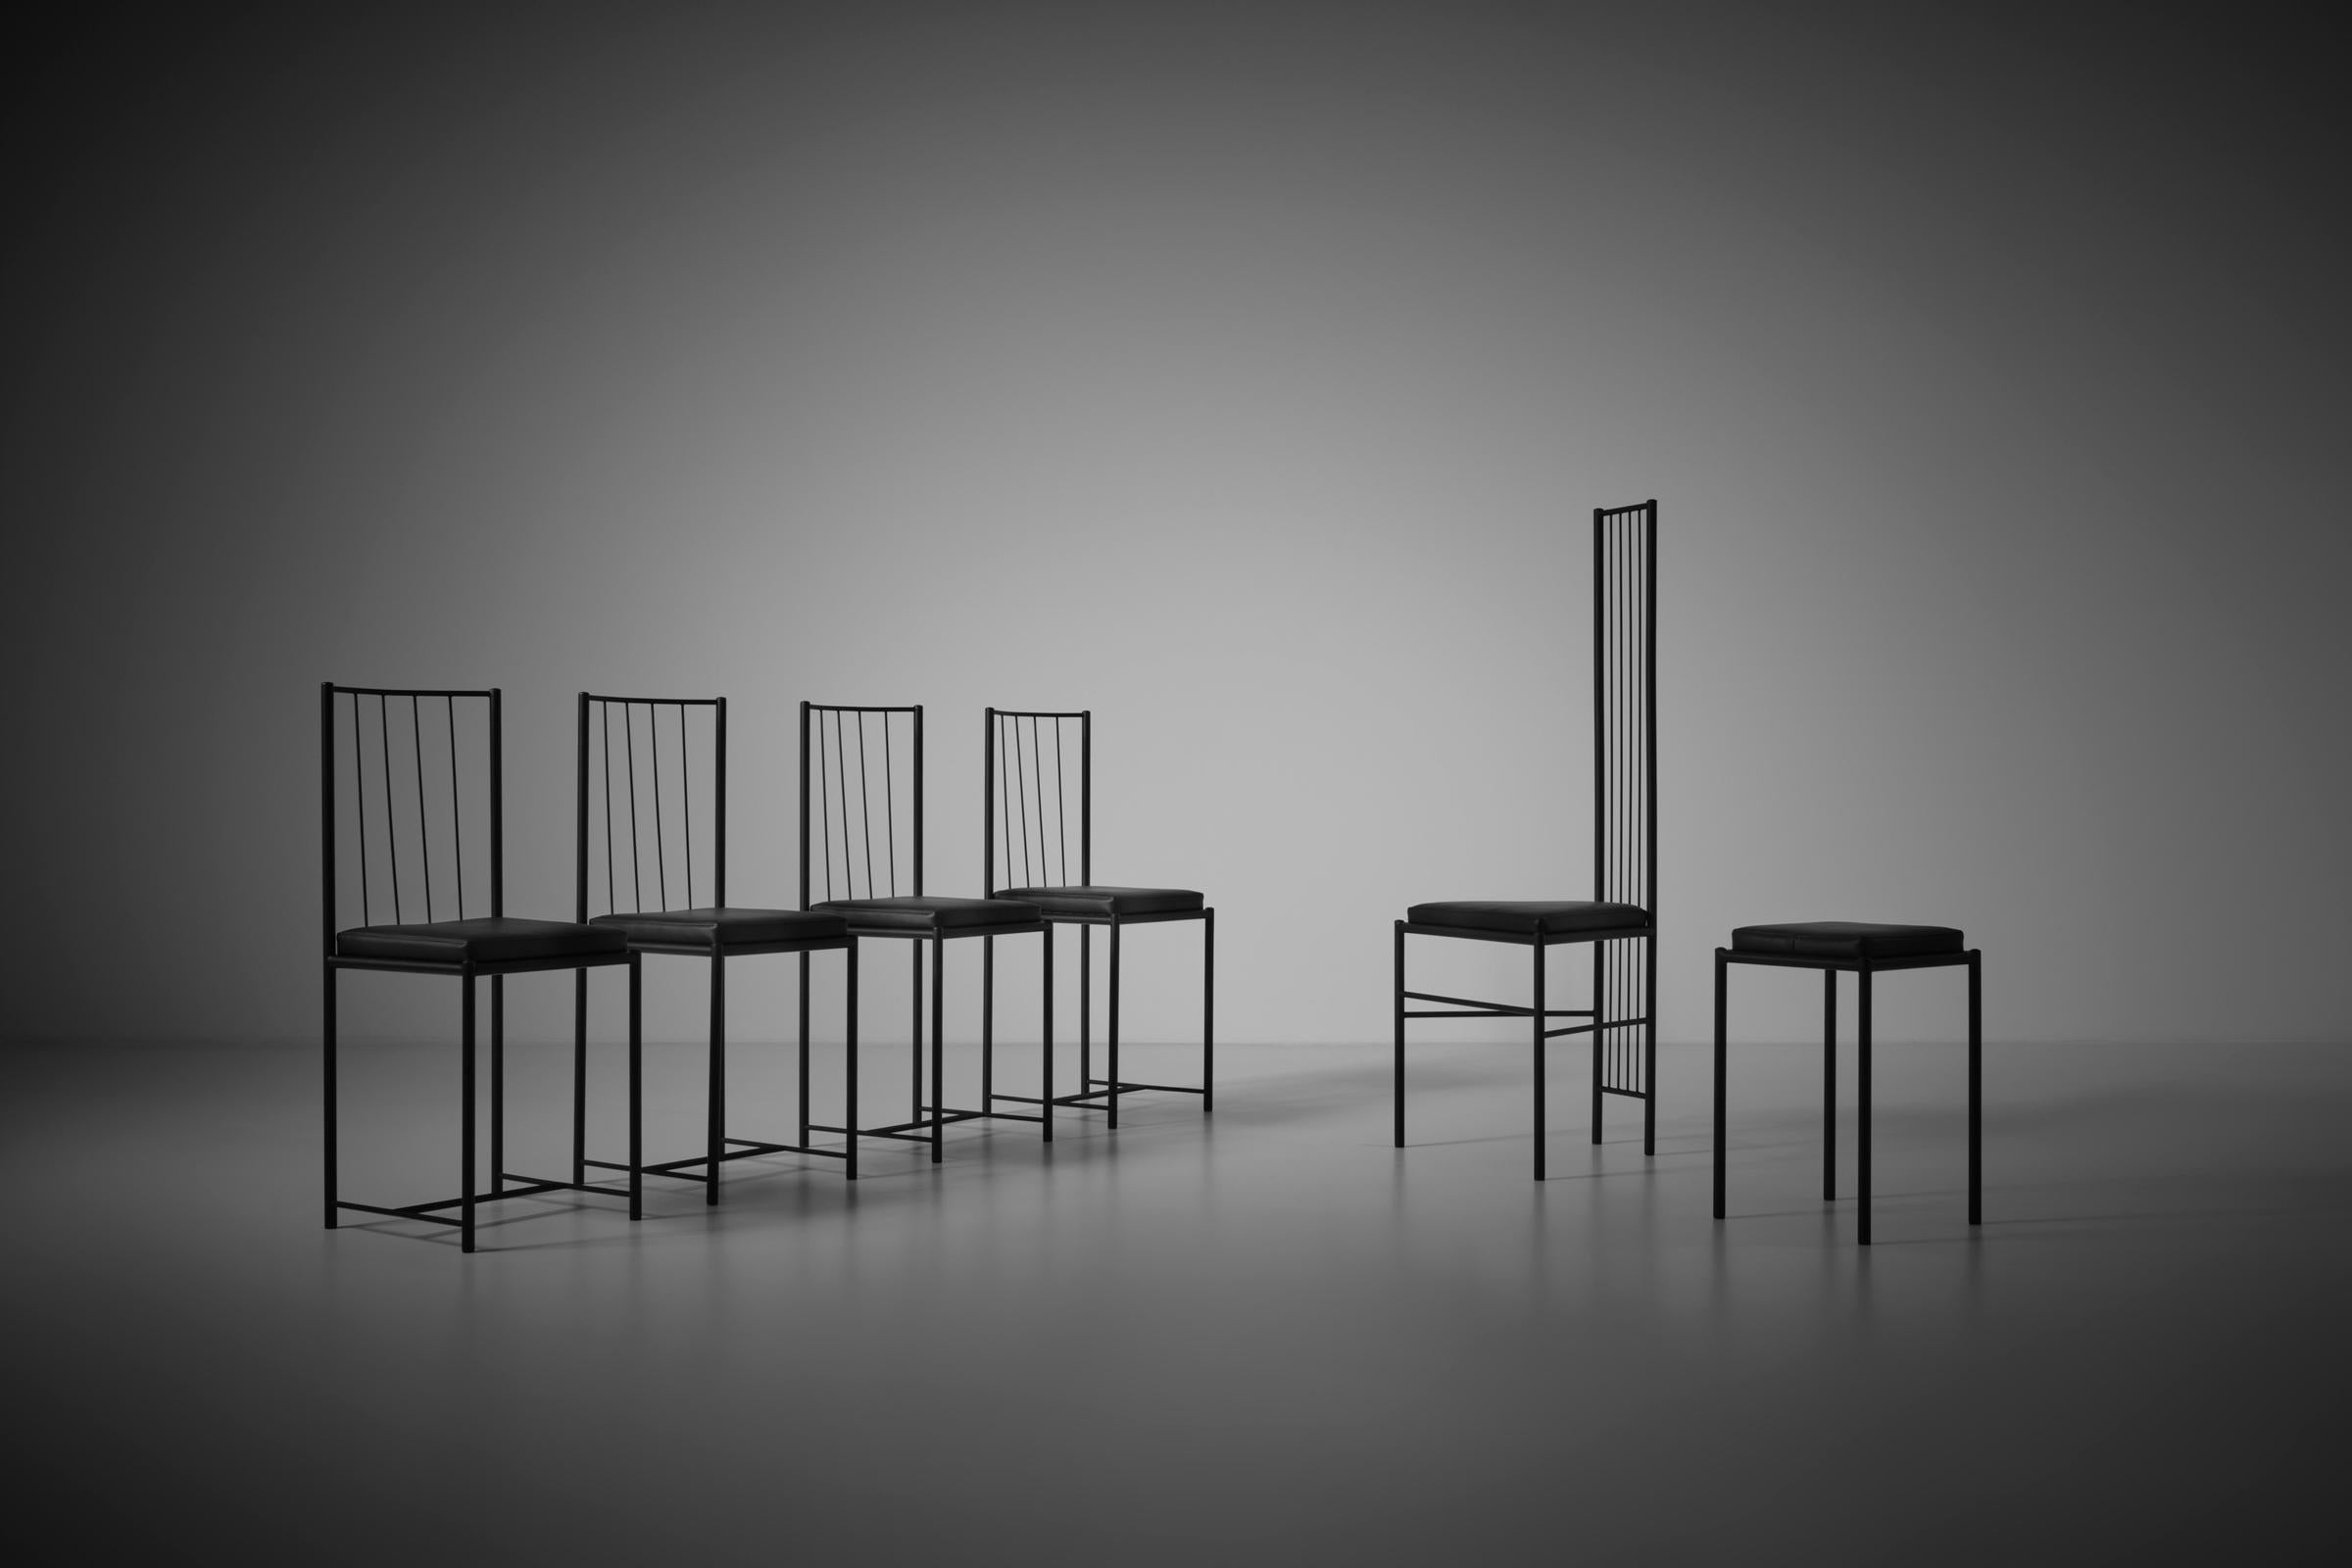 Skulpturale postmoderne Stühle, Frankreich 1980er Jahre. Die Stühle bestehen aus einem schwarz lackierten Stahlrohrrahmen und dünnen, geformten Metalldrähten, die für Sitz und Rückenlehne verwendet werden. Die Stühle können sowohl mit als auch ohne